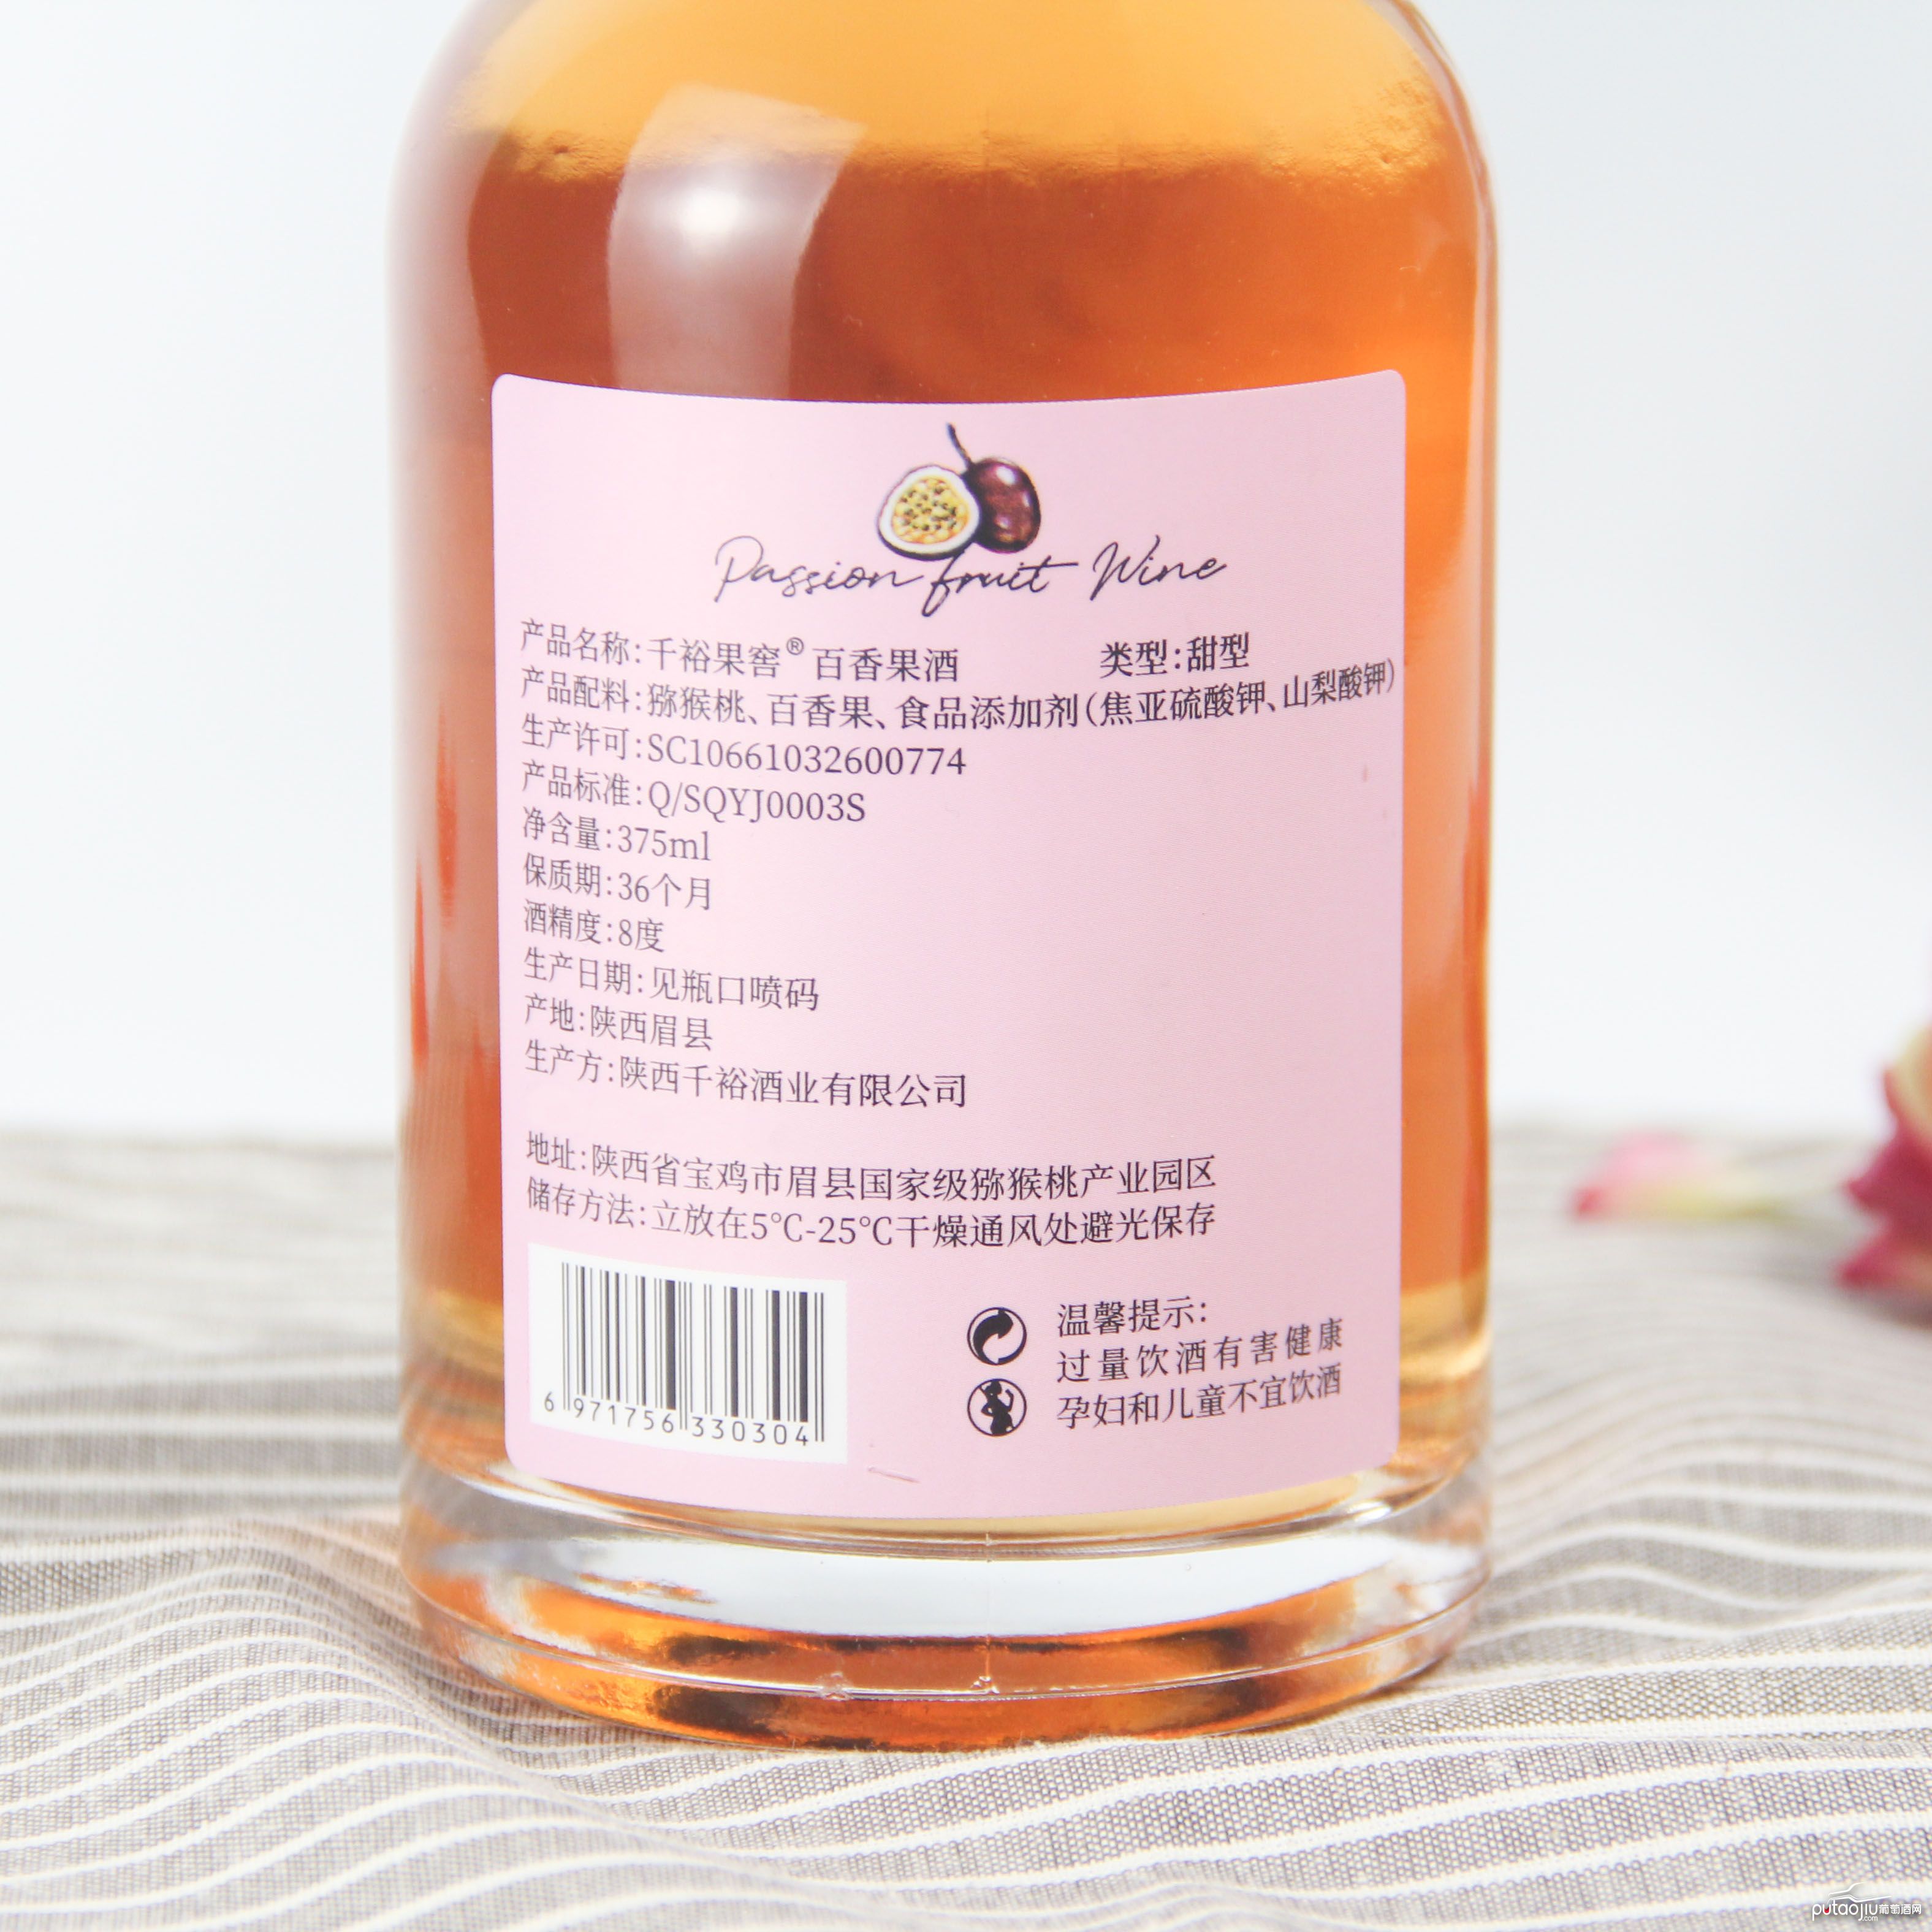 中国陕西产区千裕果窖百香果酒